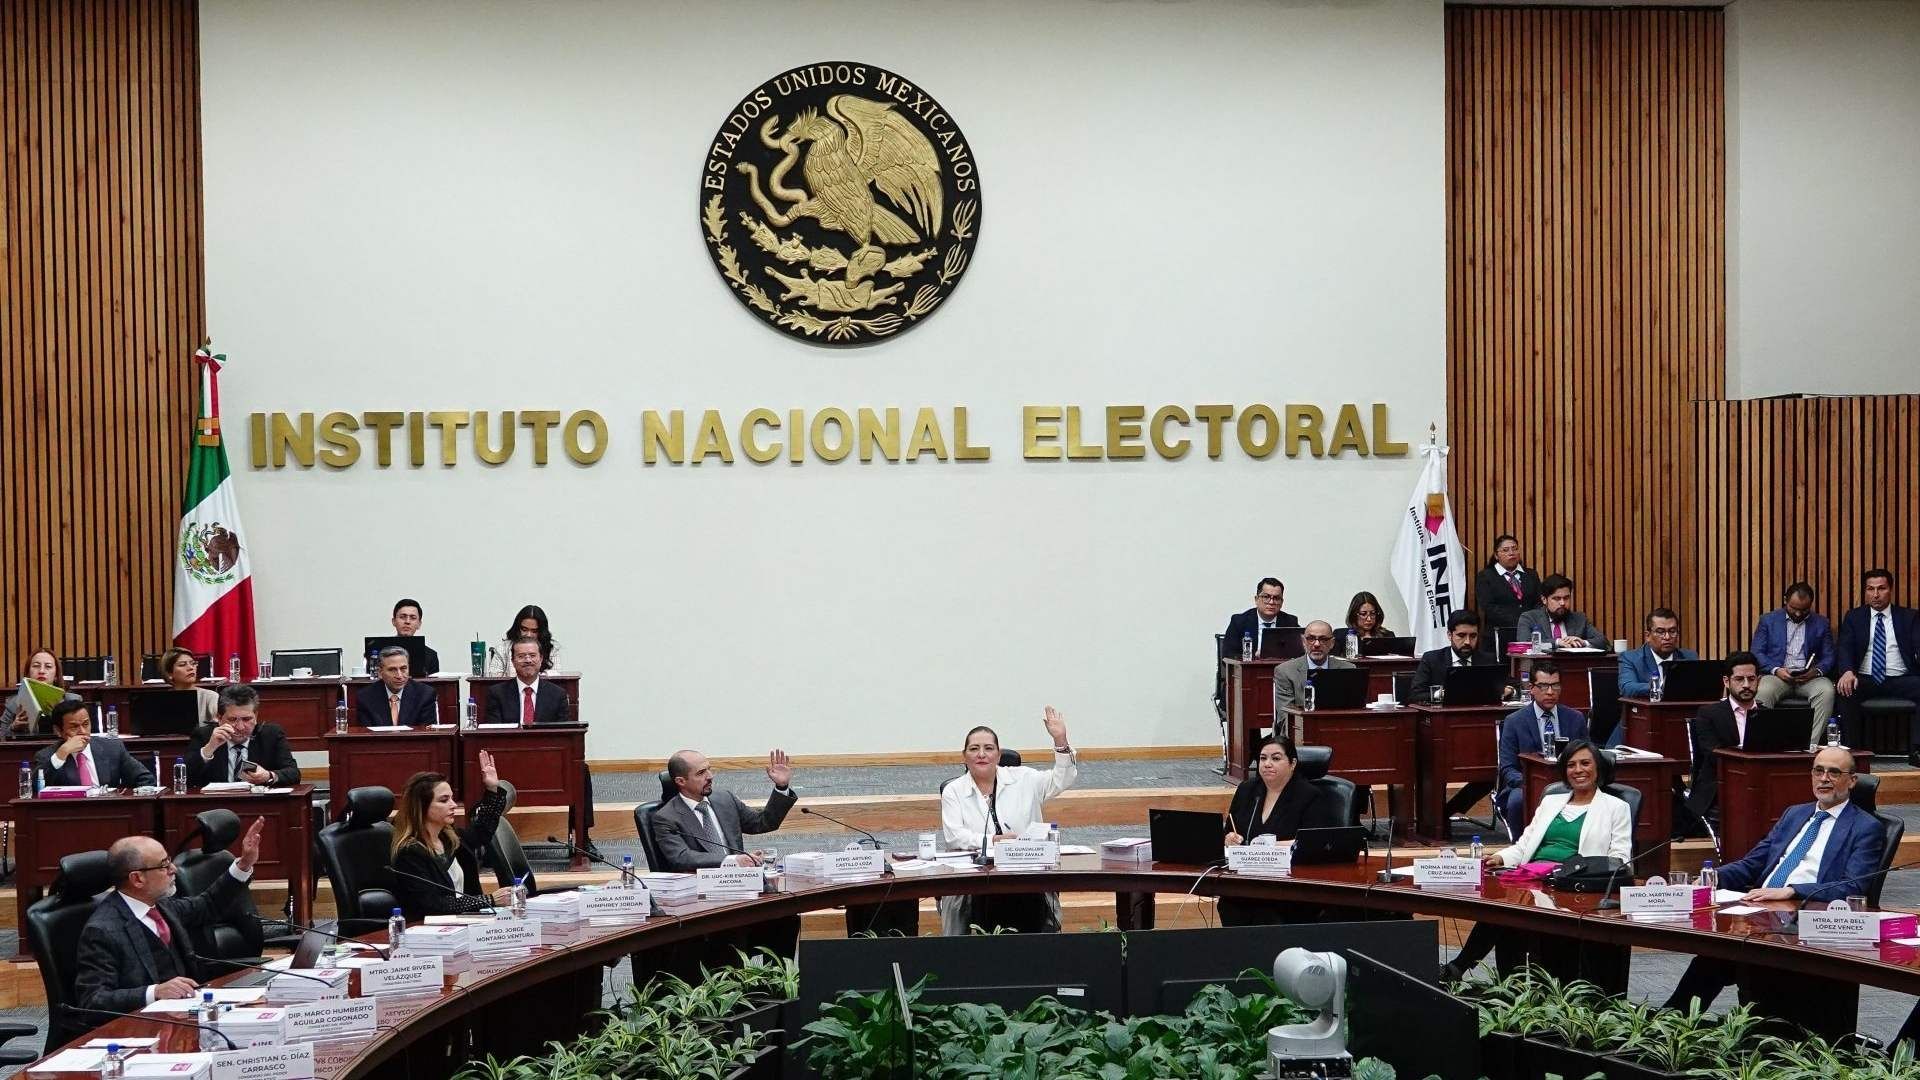 El pasado 28 de febrero, el consejo General aprobó el registro de las candidaturas procedentes a diputaciones federales, senadurías y Presidencia de la República 